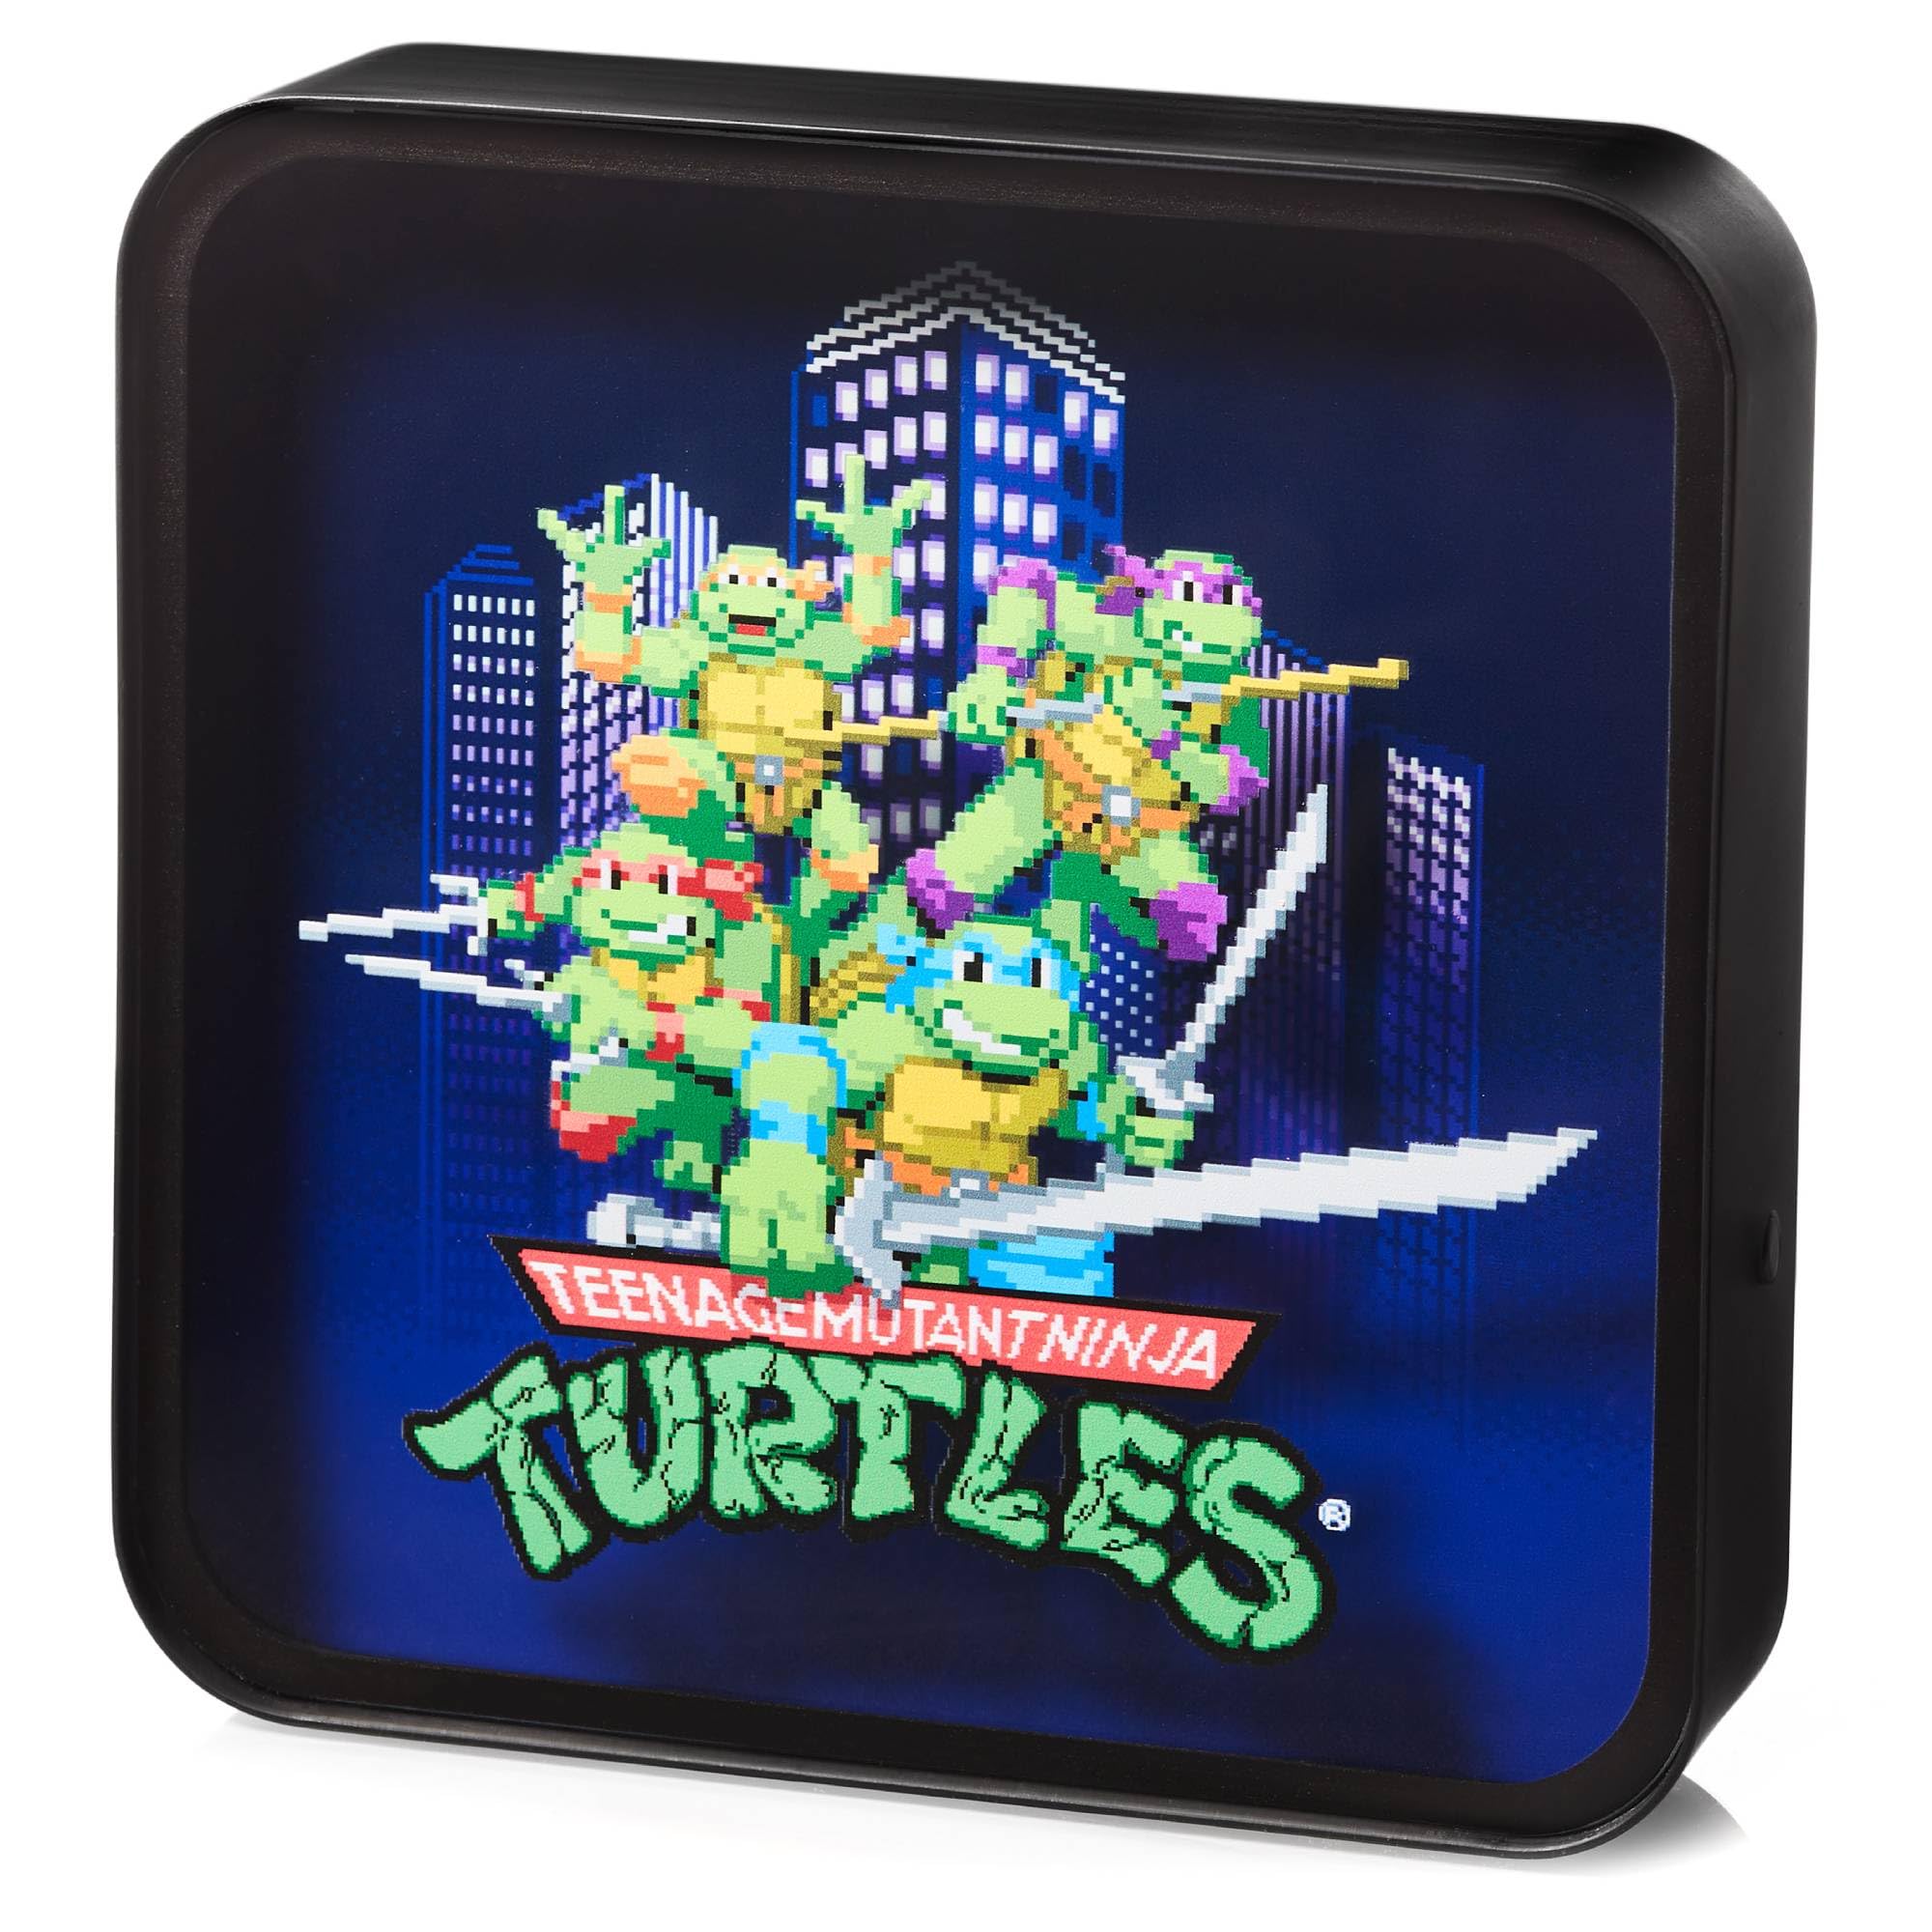 NUMSKULL Offizielle TMNT Plexiglas-Logo Schreibtischlampe Wandlicht für Schlafzimmer, Büro, Zuhause, Studium, Arbeit - Offizielles Teenage Mutant Ninja Turtles Merchandise